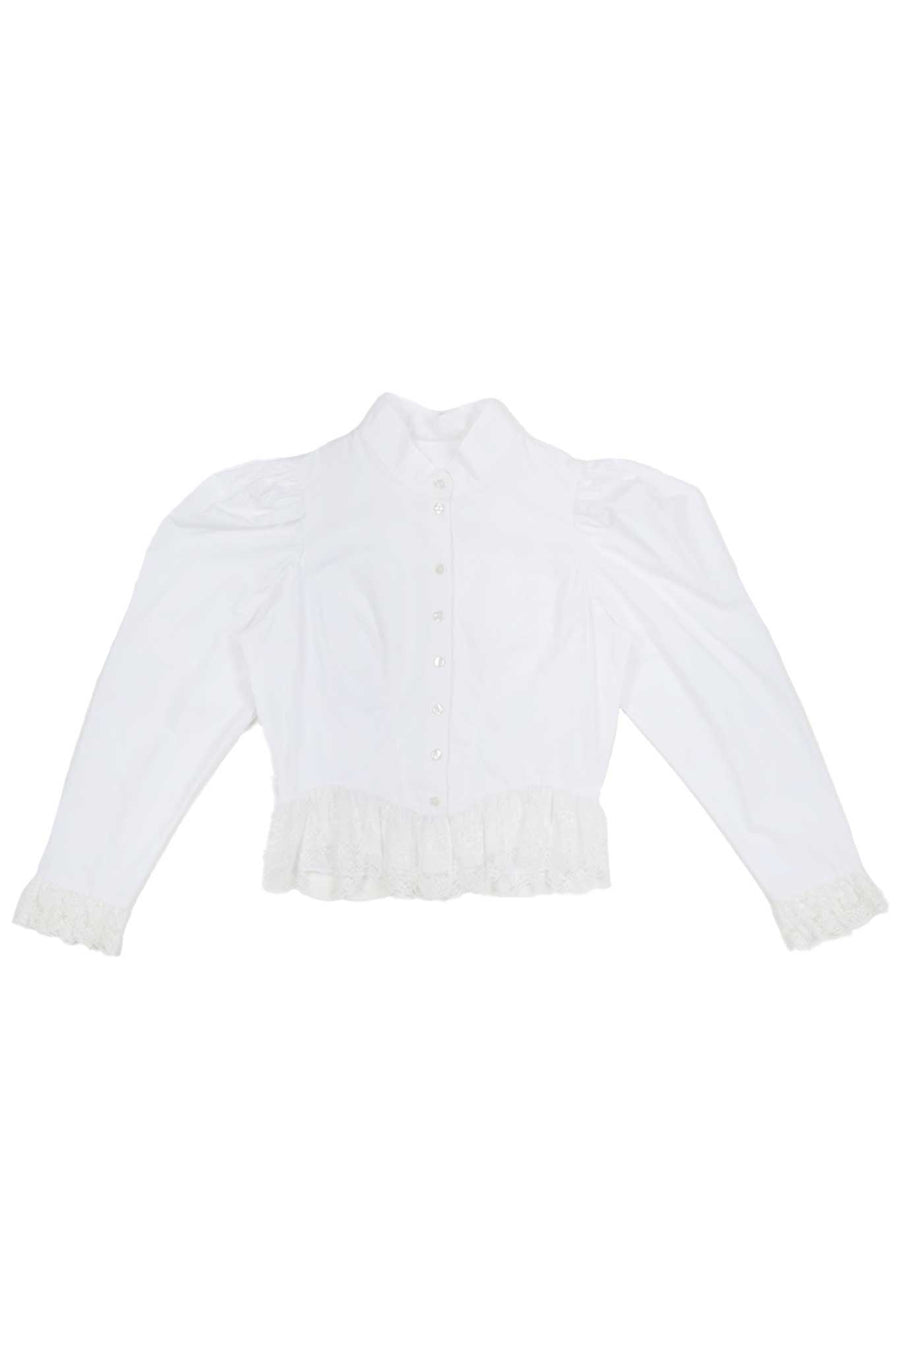 BATSHEVA - Grace Blouse in White Lace